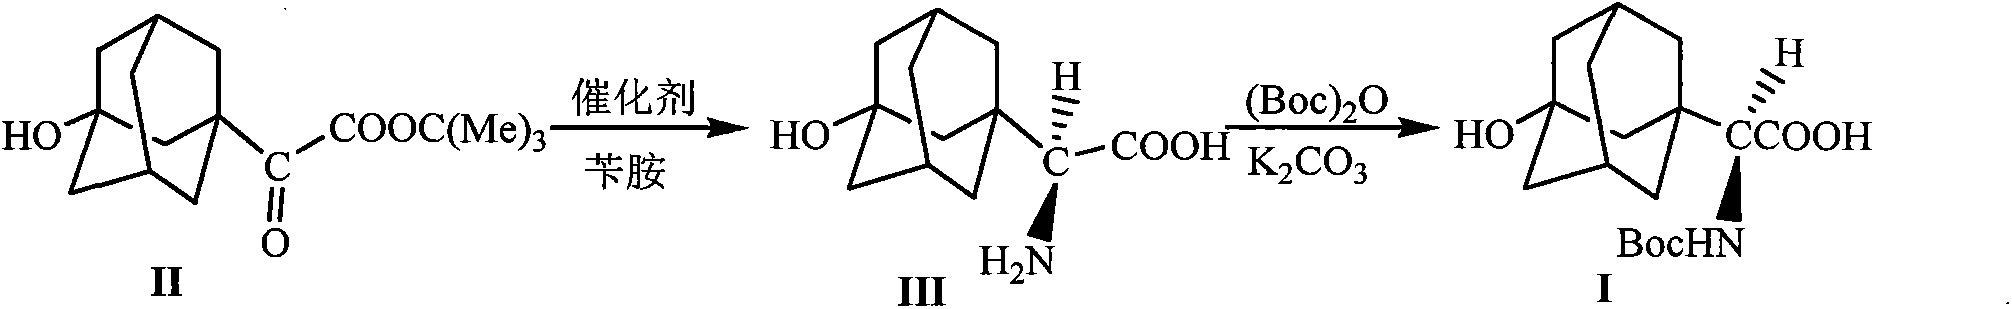 Method of synthesizing saxagliptin intermediate N-t-butyloxycarboryl-3-hydroxyl-1-adamantyl-D-glycine